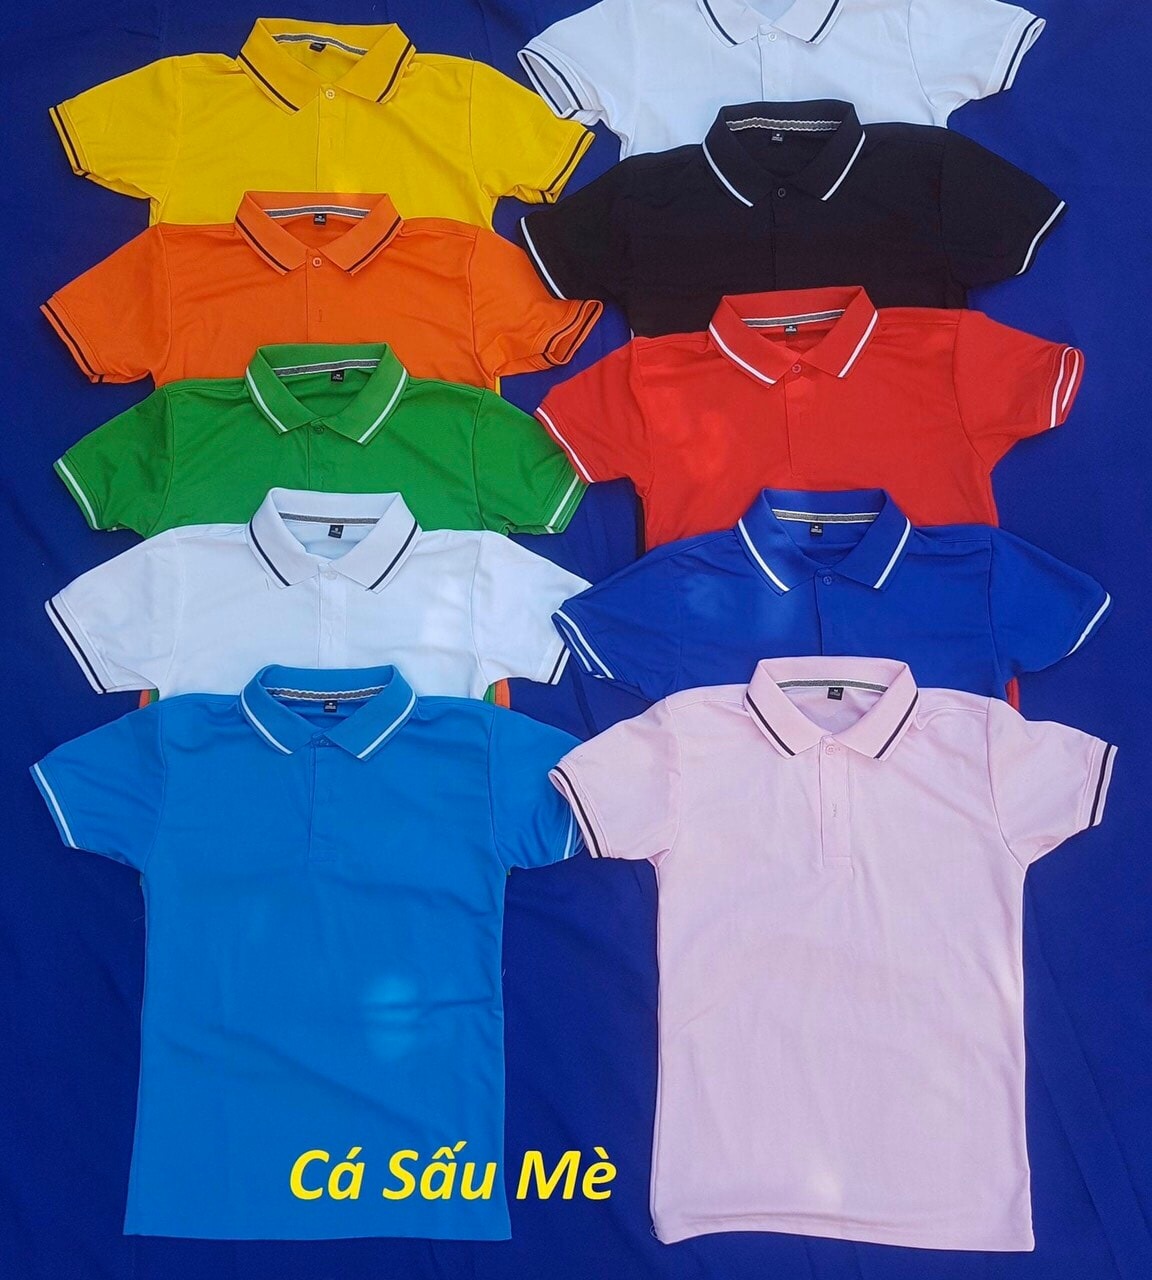 Hình ảnh đồng mục áo màu sắc đa dạng